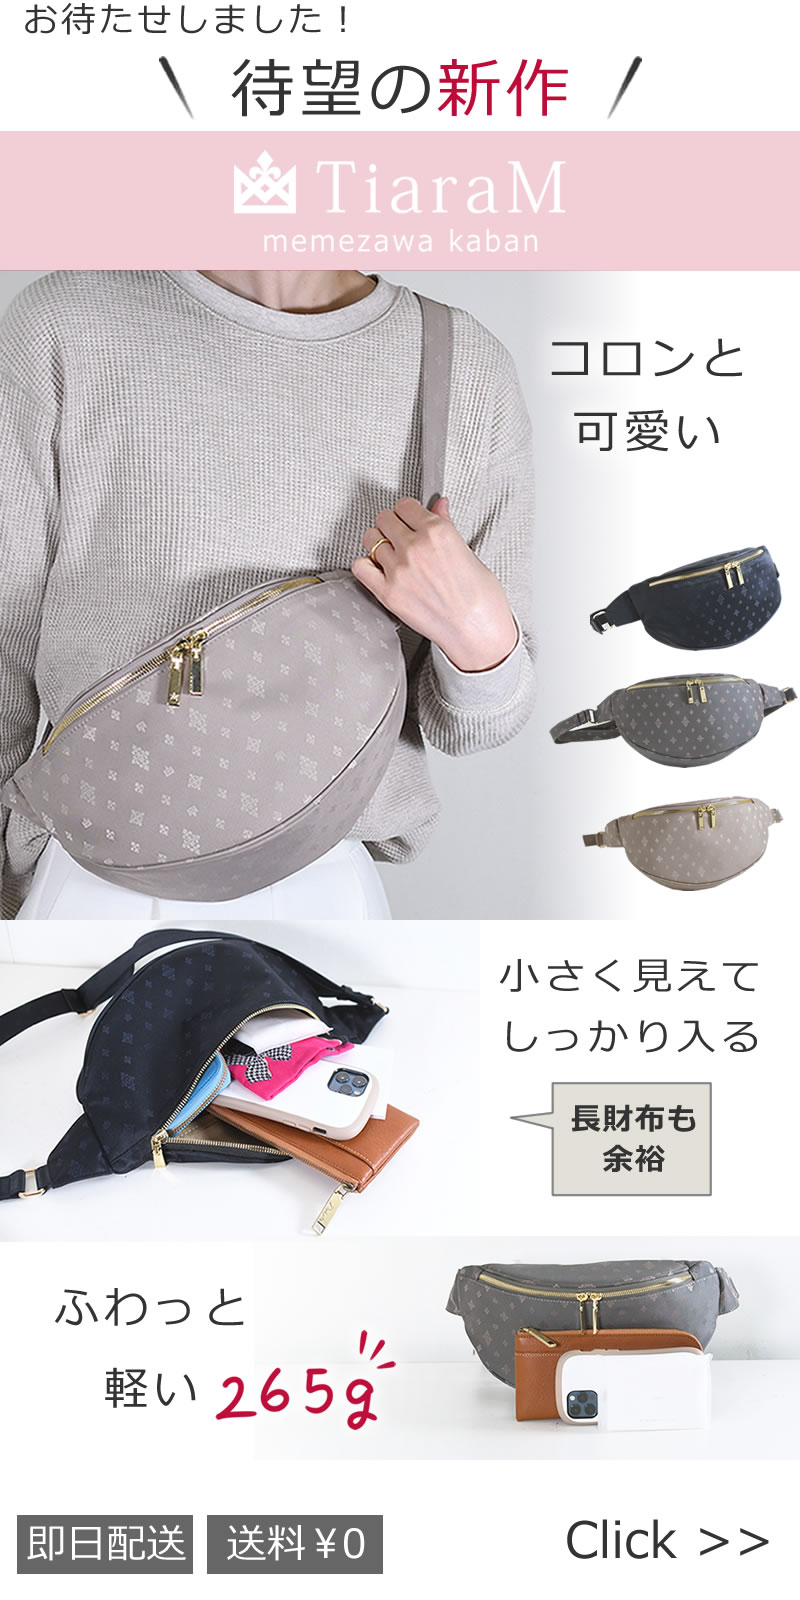 memezawakaban(目々澤鞄)TiaraMシリーズ 新商品きれいめボディバッグ コロンとした見た目が大人可愛い55017